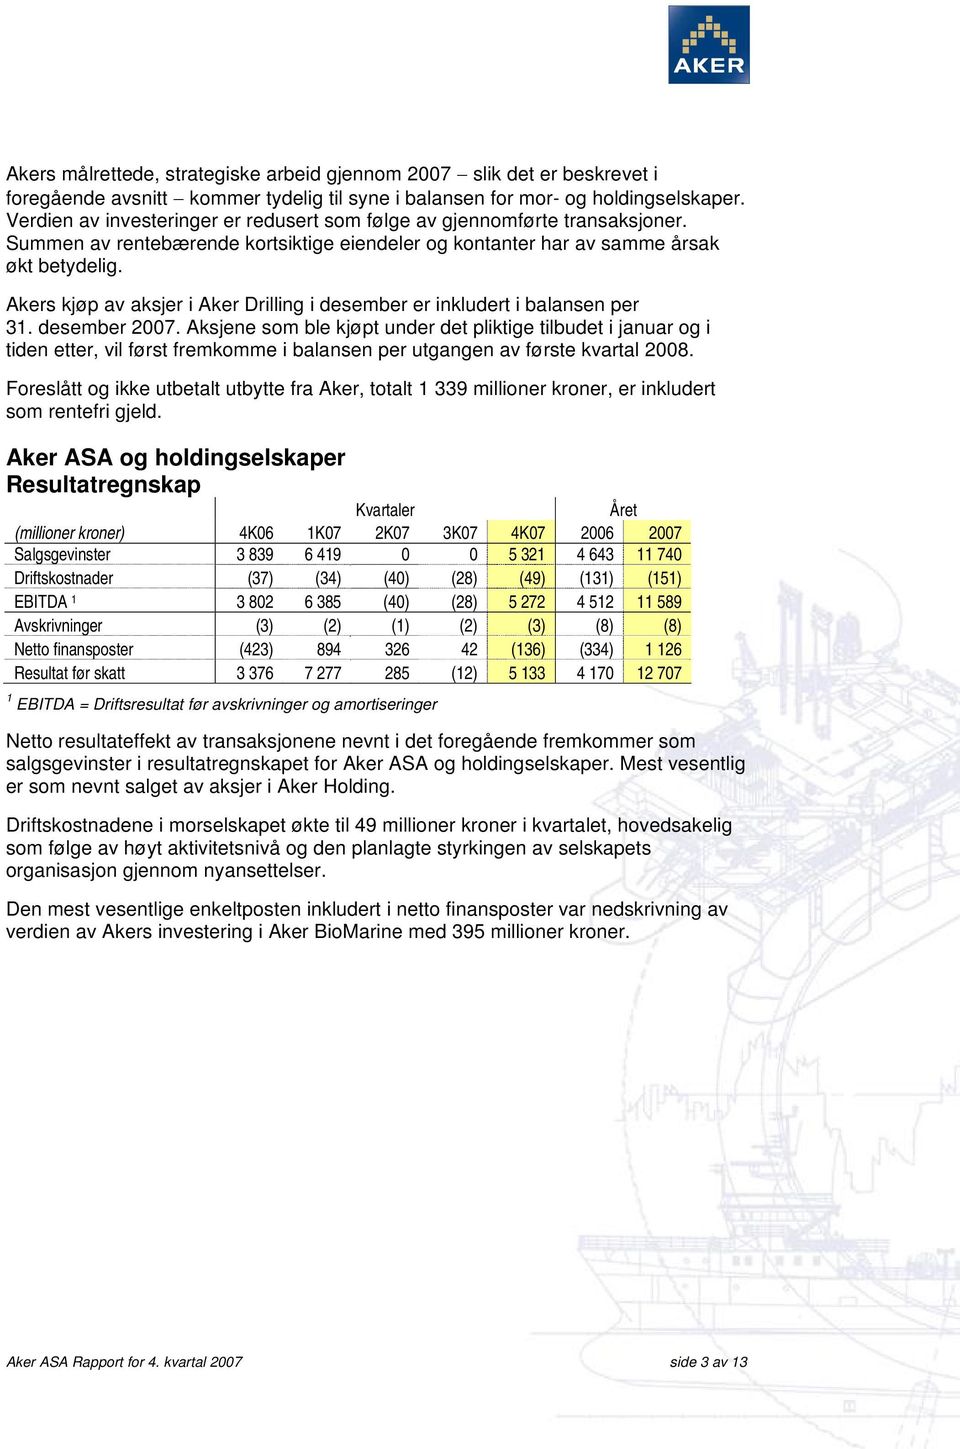 Akers kjøp av aksjer i Aker Drilling i desember er inkludert i balansen per 31. desember 2007.